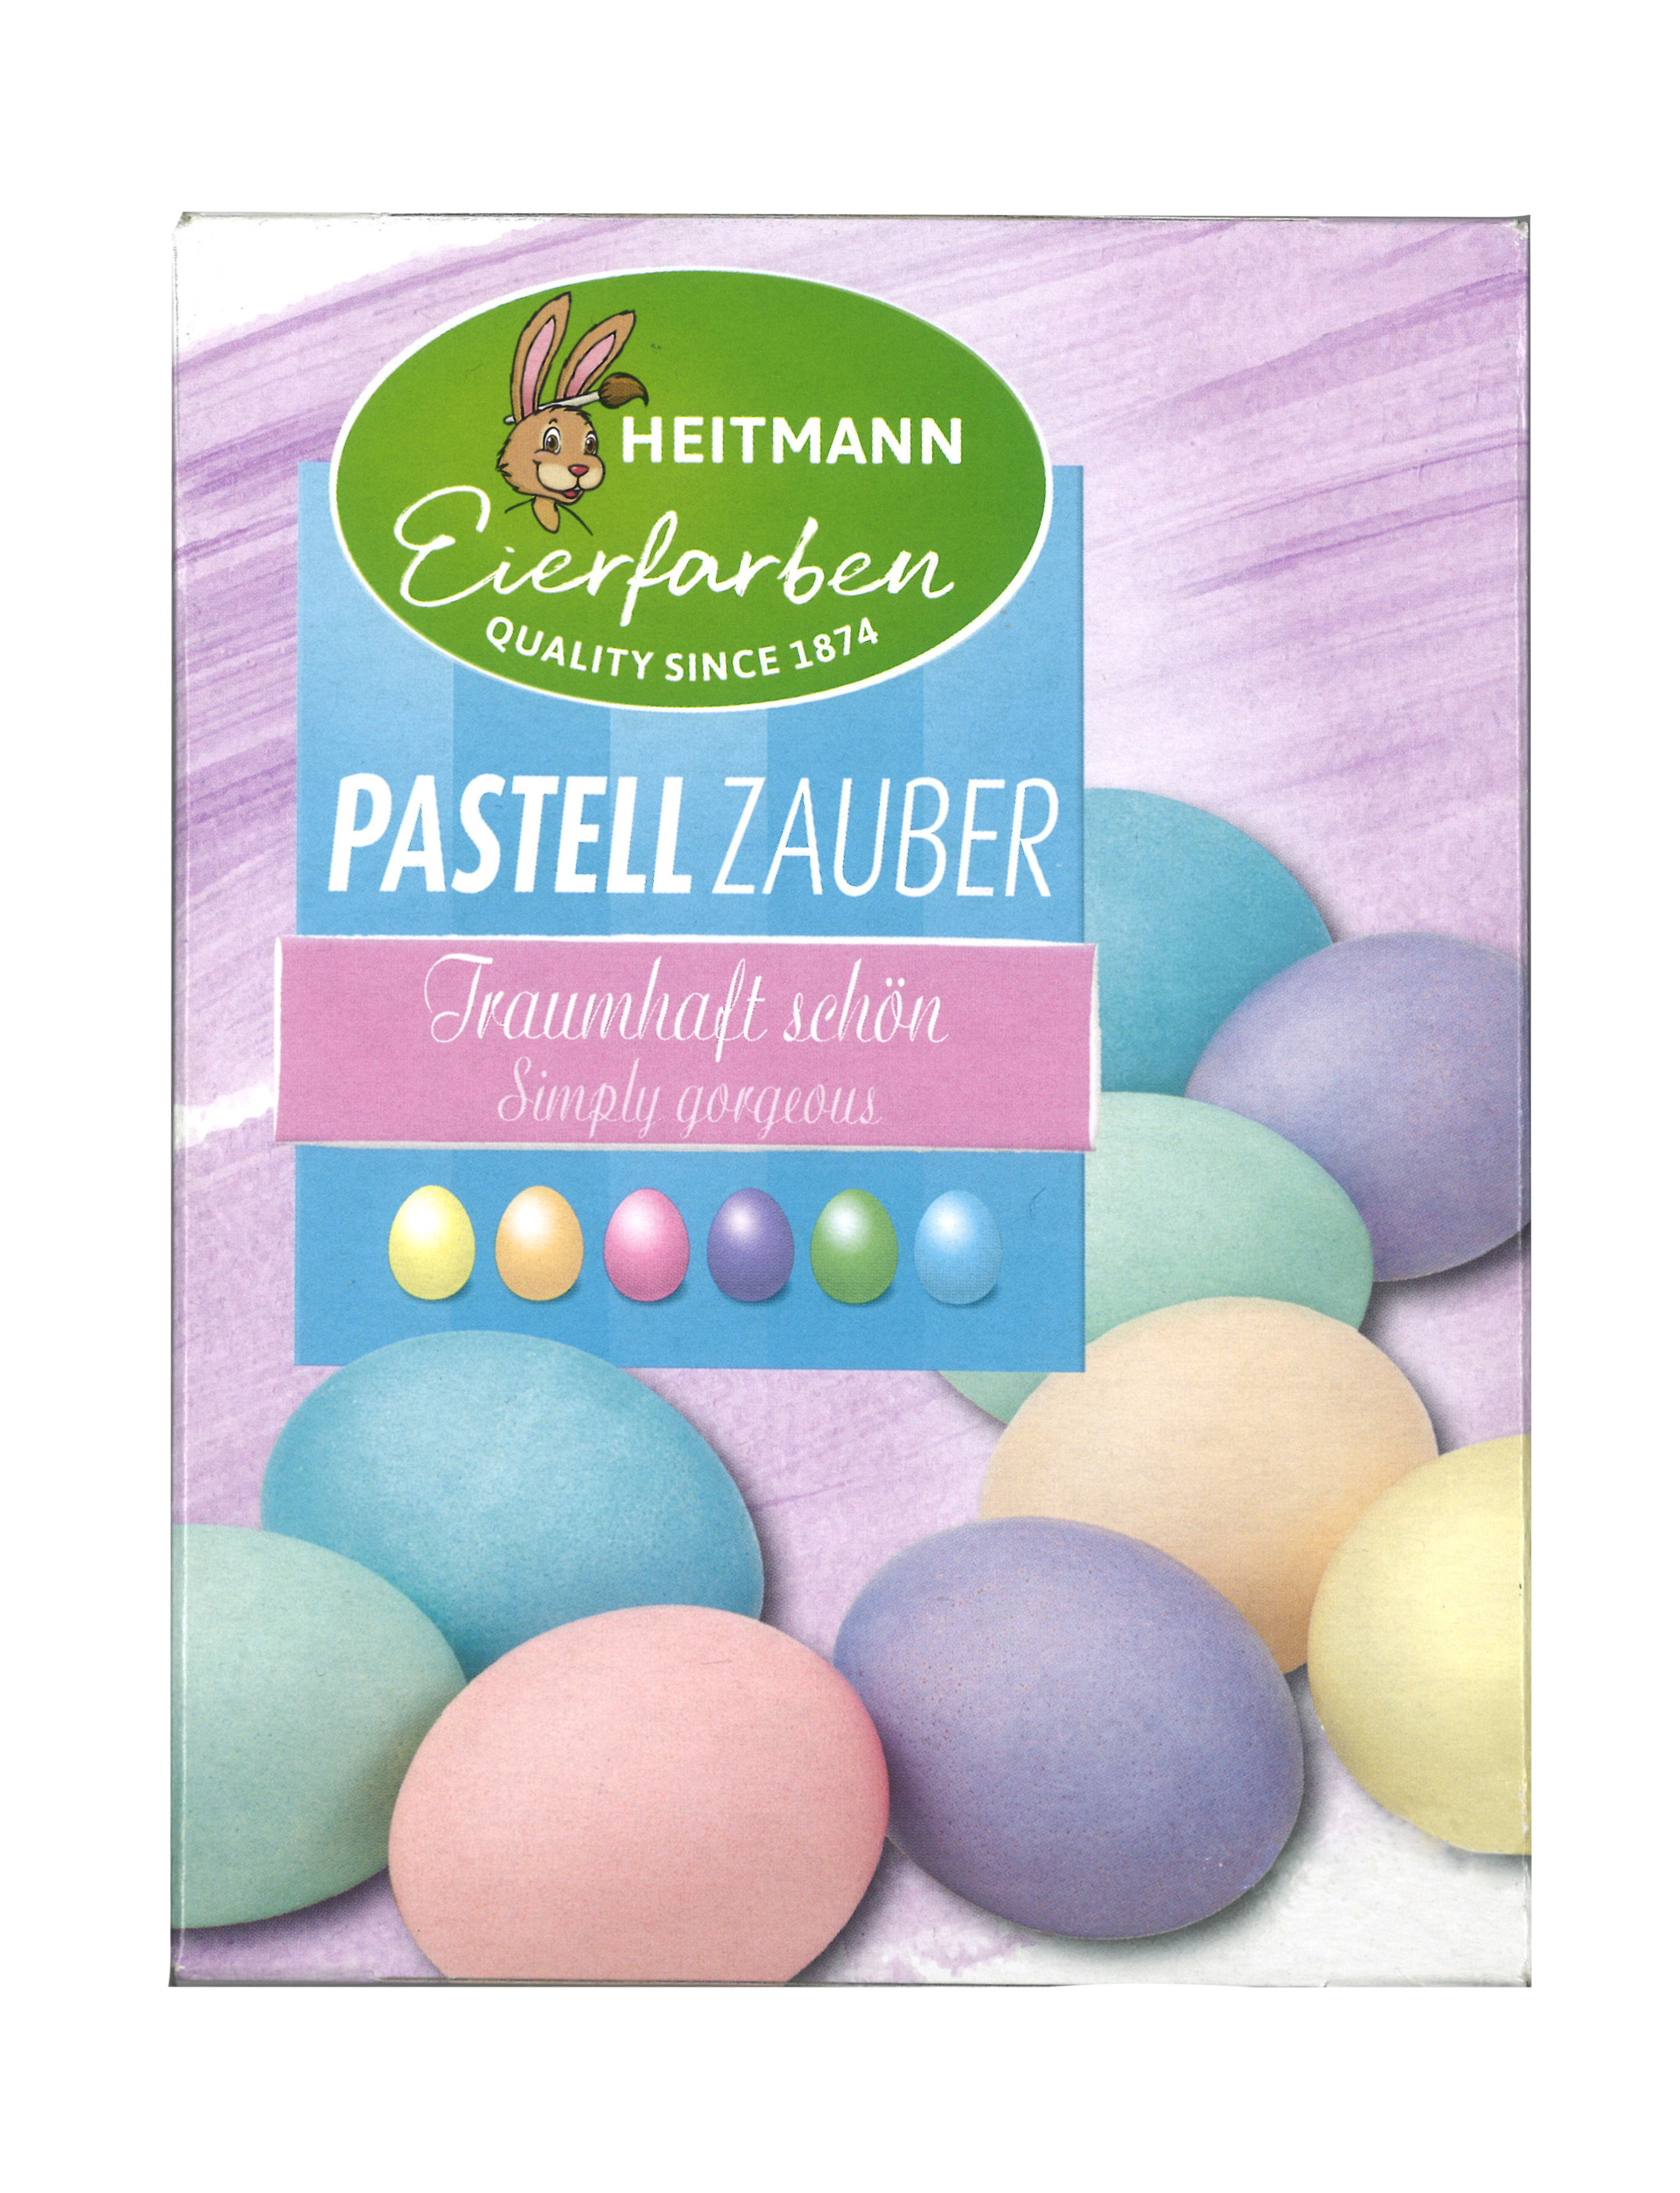 Heitmann Pastell-Zauber 6 Eierfarben im Set